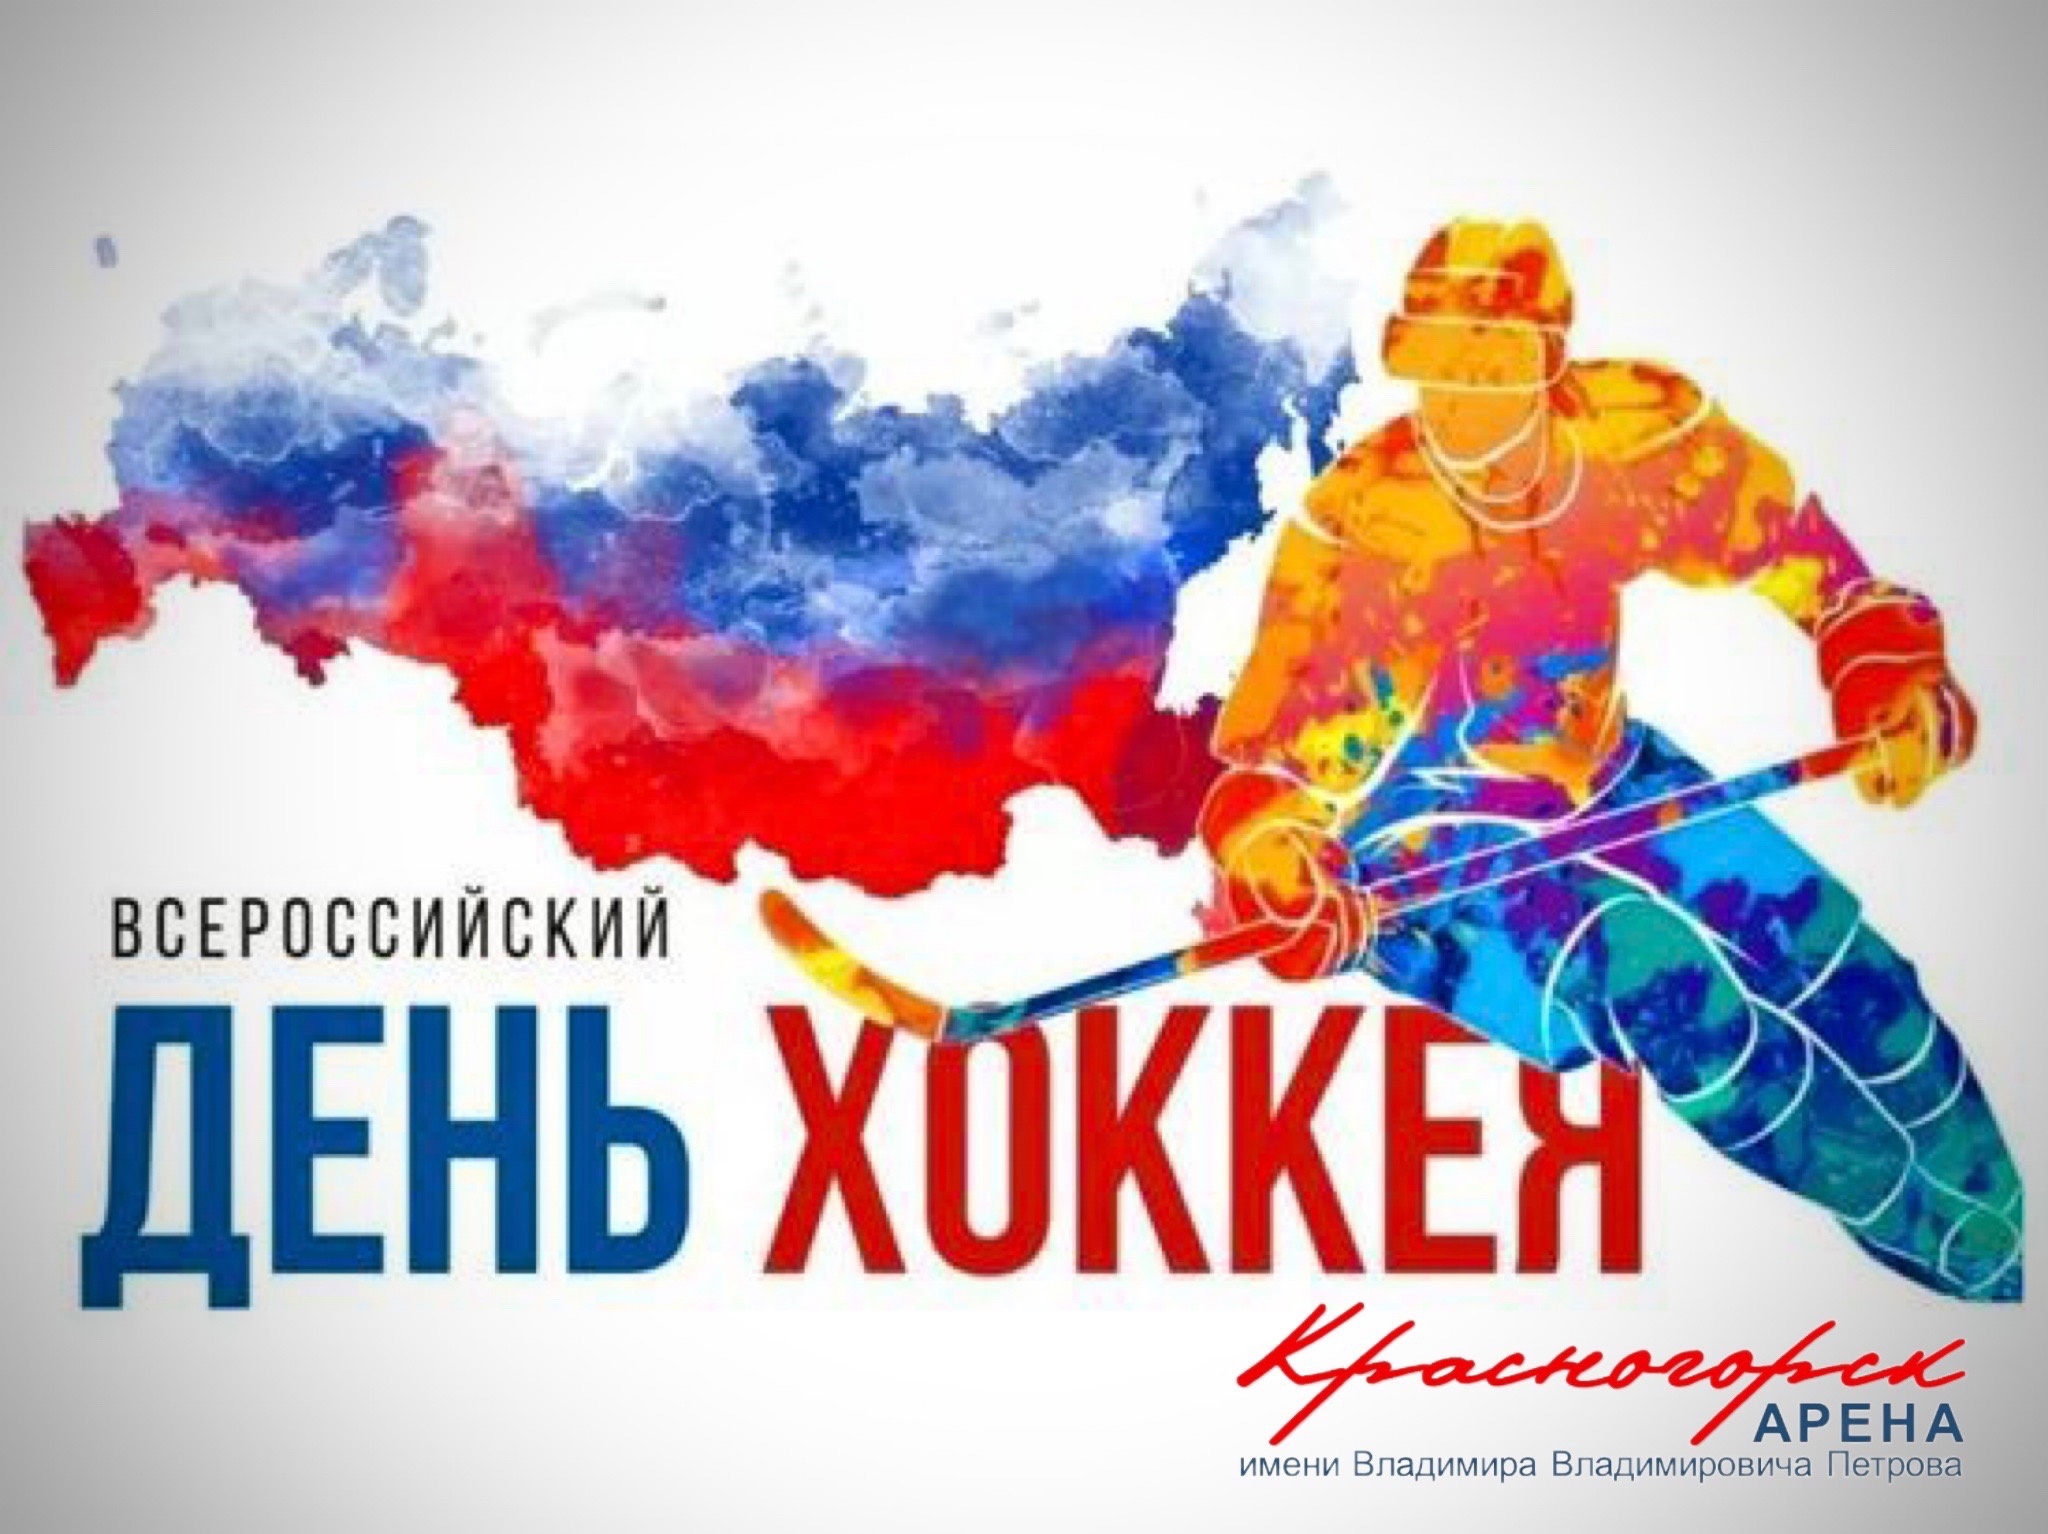 С первым днём зимы и Всероссийским днём хоккея.